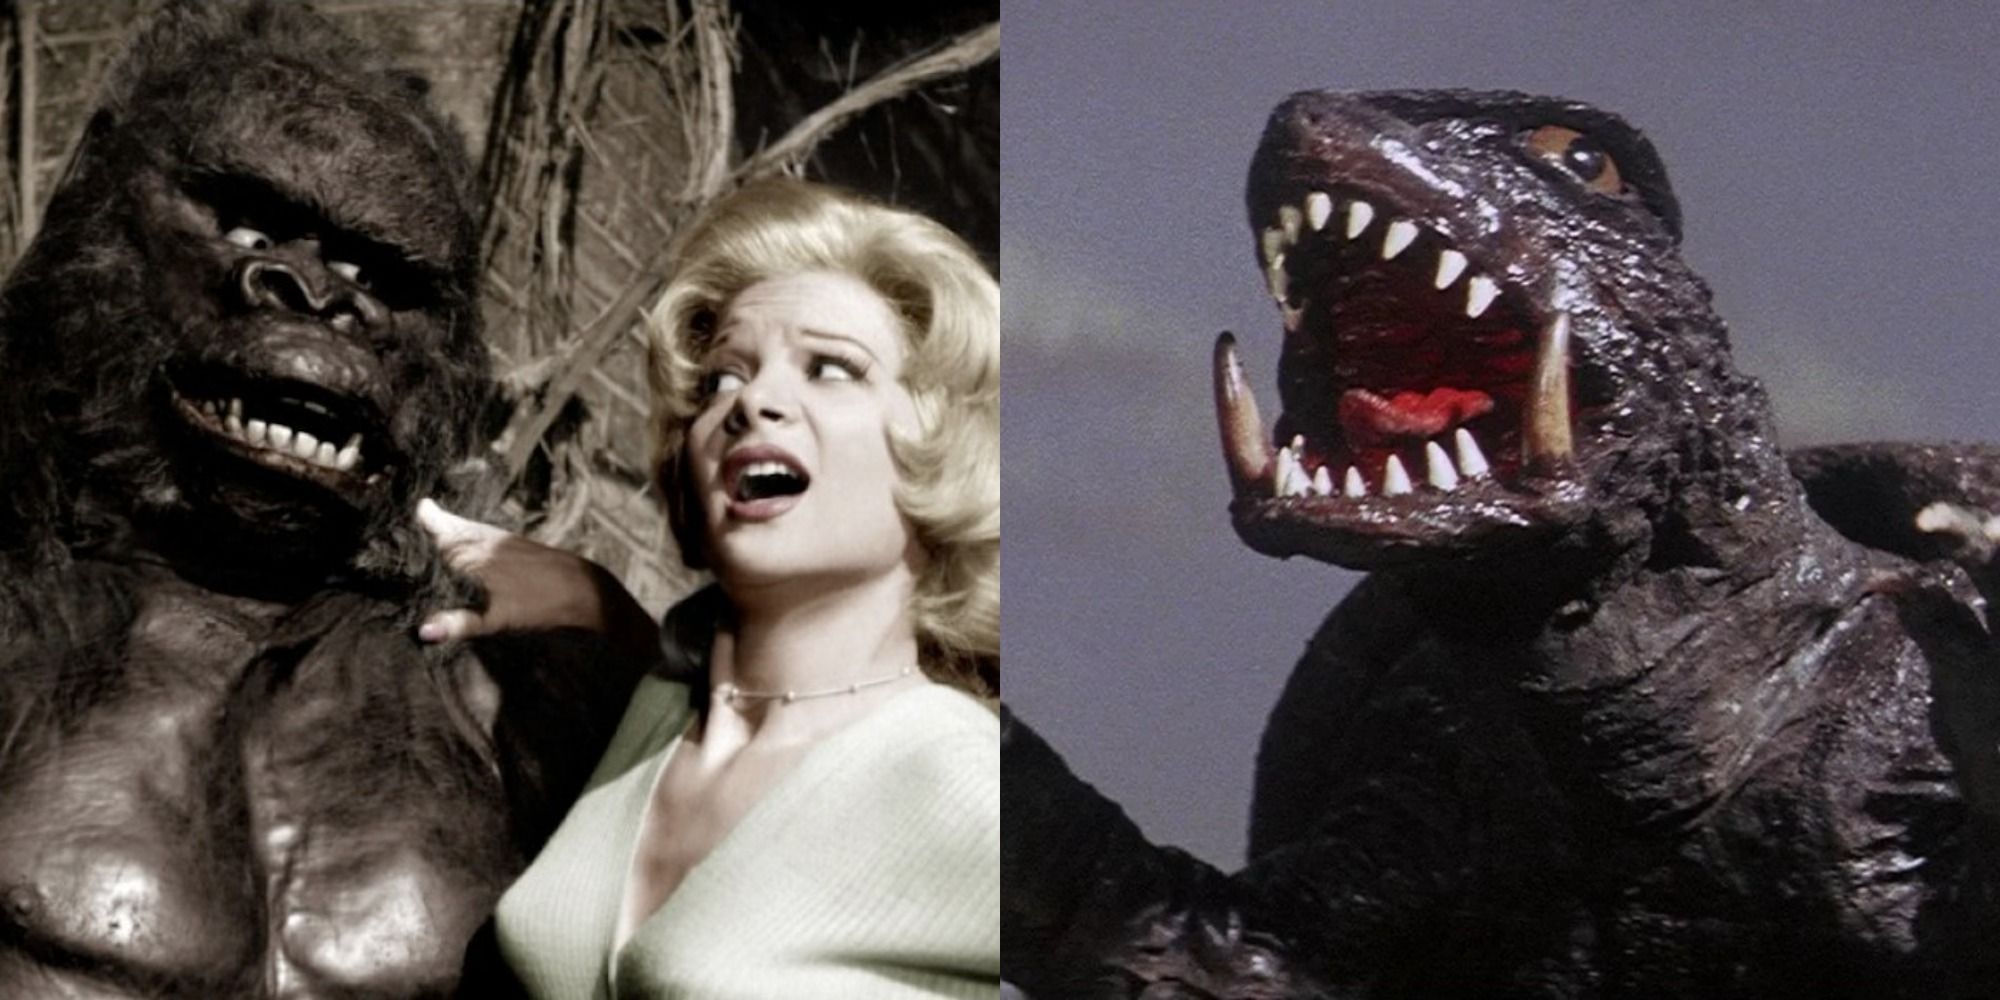 Split image of Konga with a woman and Godzilla